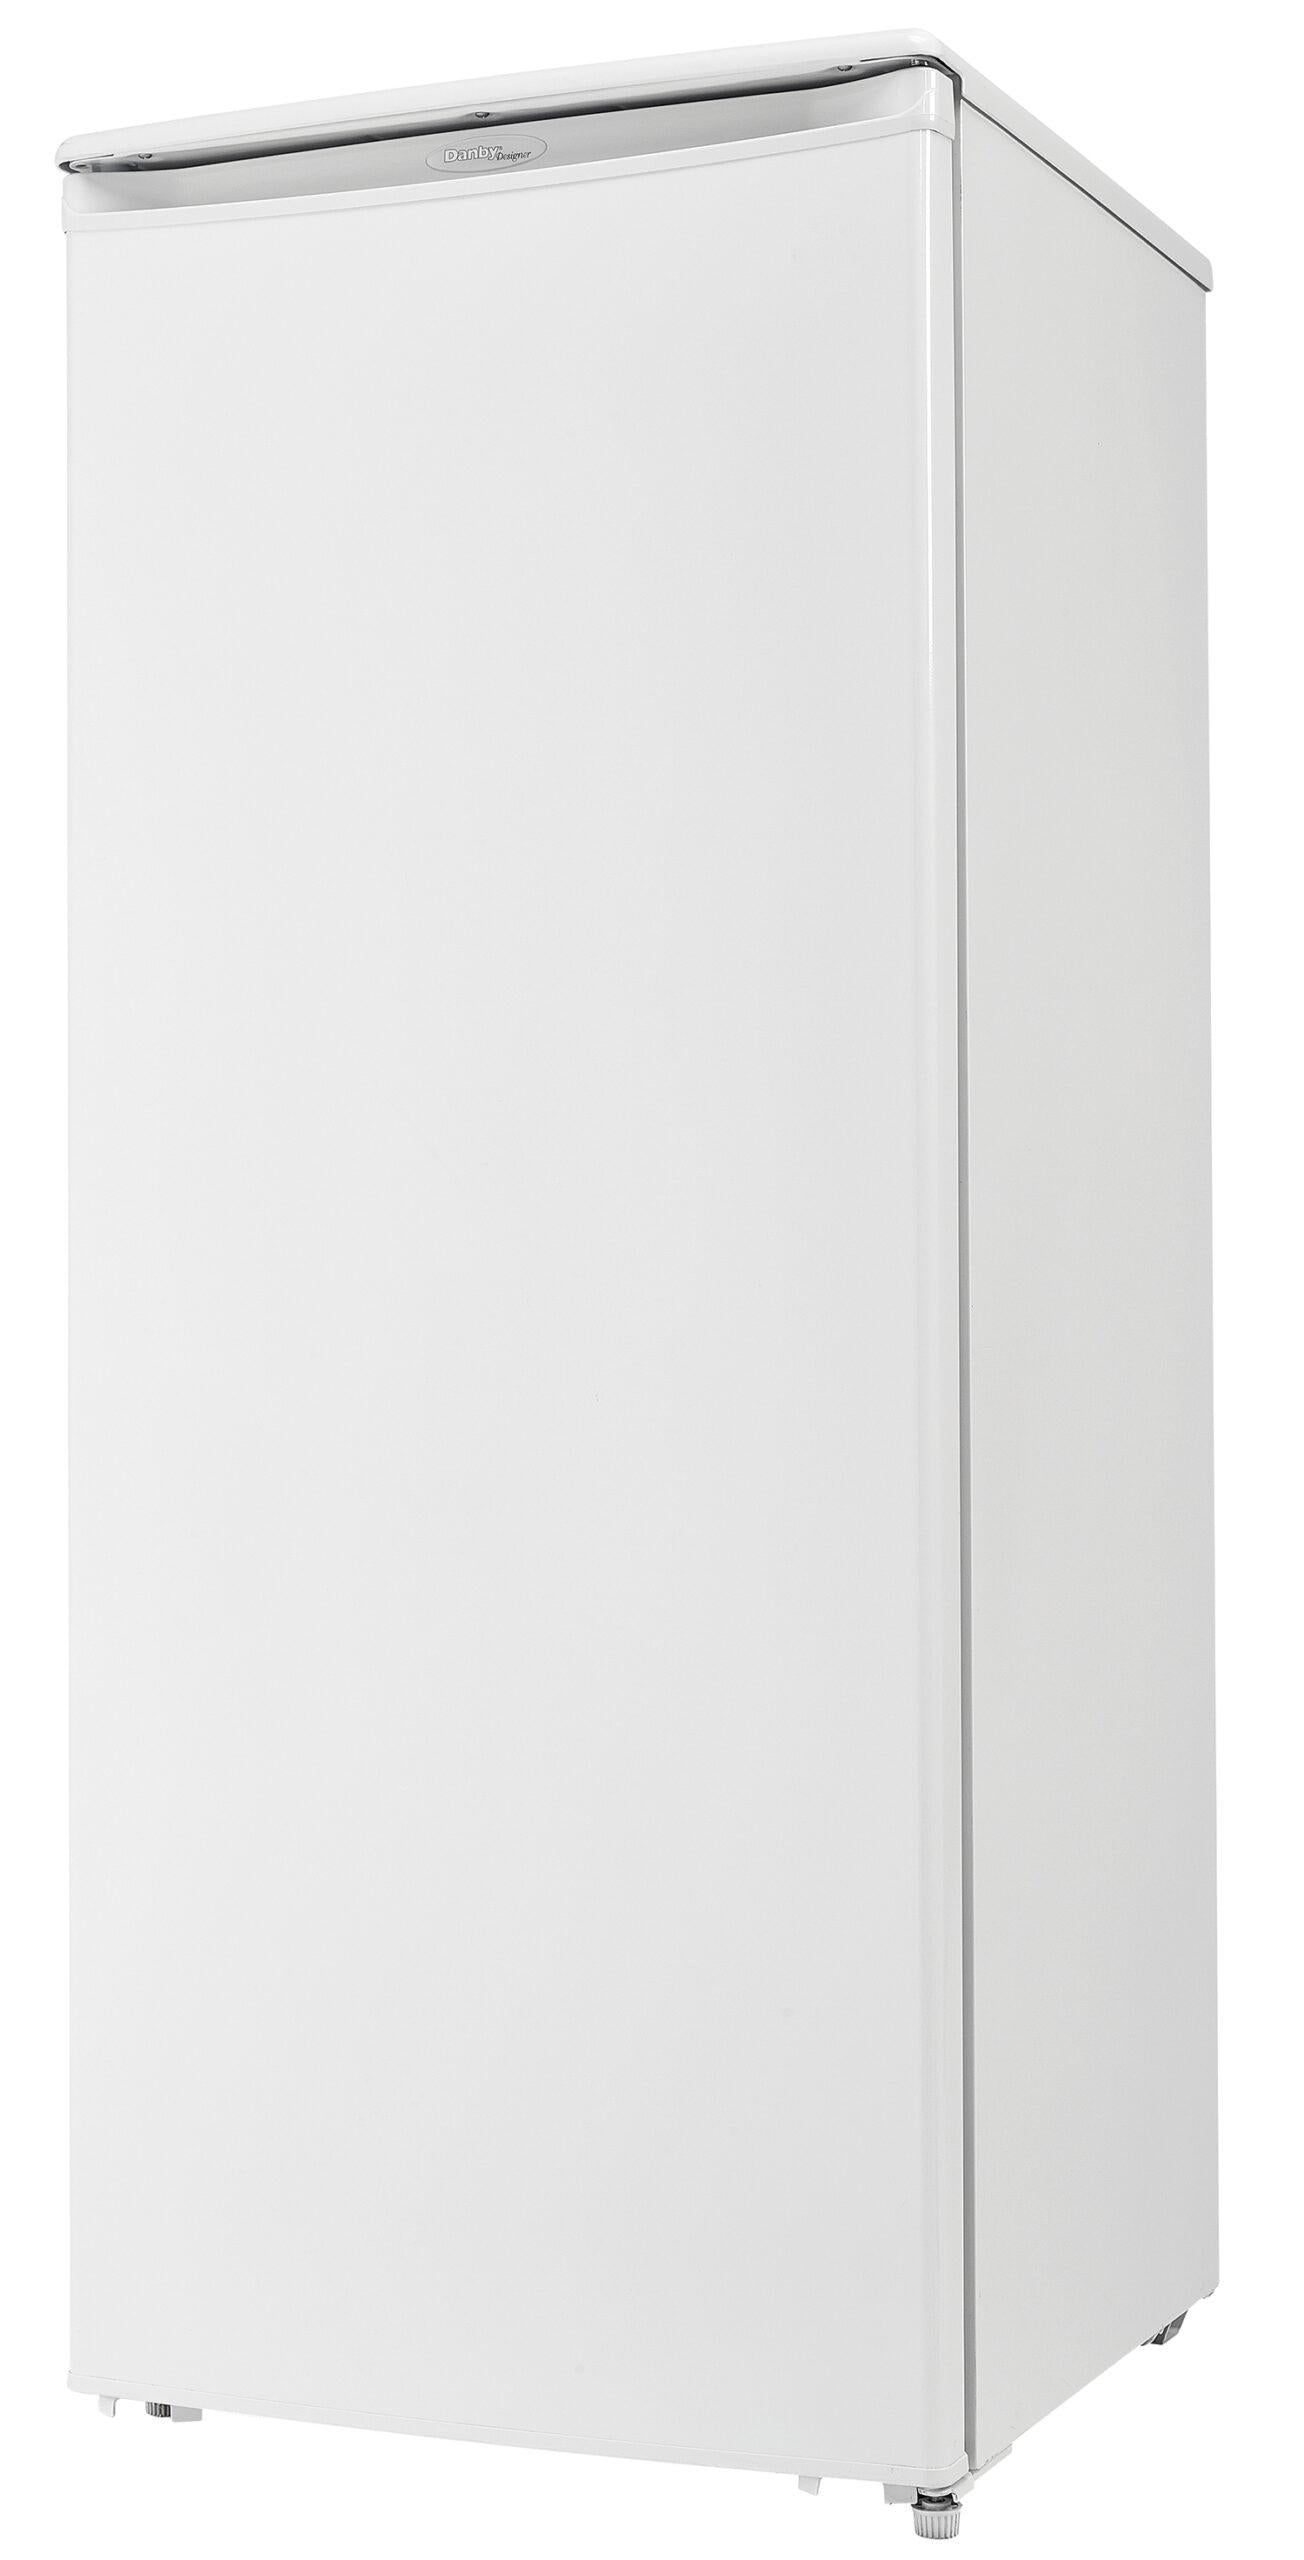 Danby Designer 16.7 cu. ft. Upright Freezer in White - DUF167A4WDD